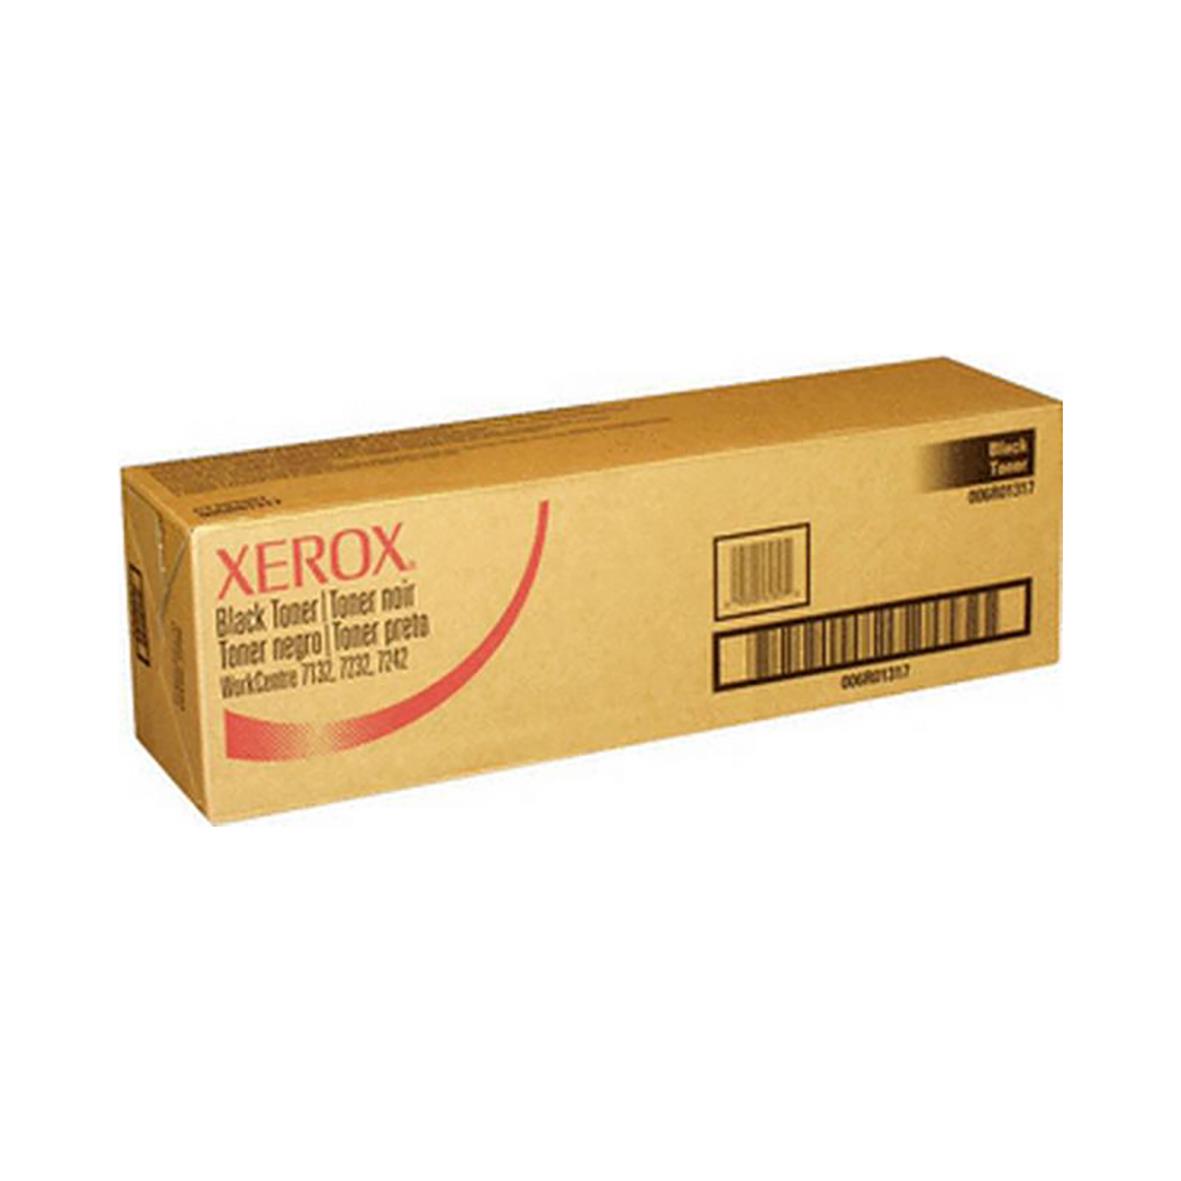 Lasertoner Xerox 21000 Sidor 006R01317 Svart